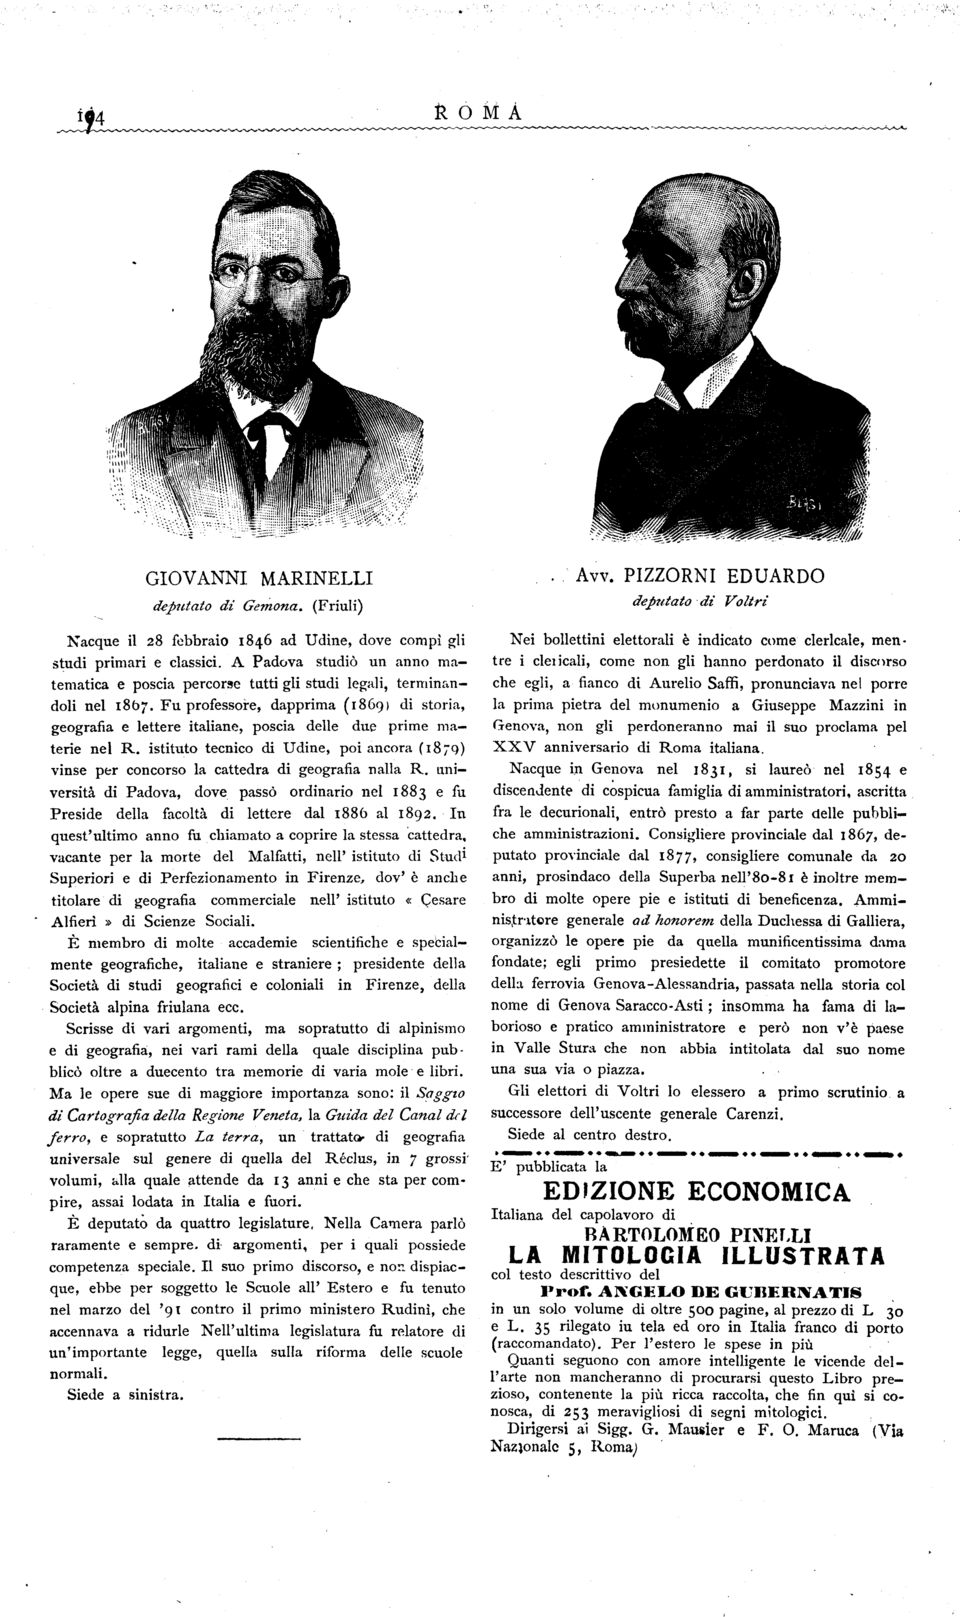 porre la prima pietra del monumenio a Giuseppe Mazzini in Genova non gli perdoneranno mai il suo proclama pel XXV anniversario di Roma italiana.